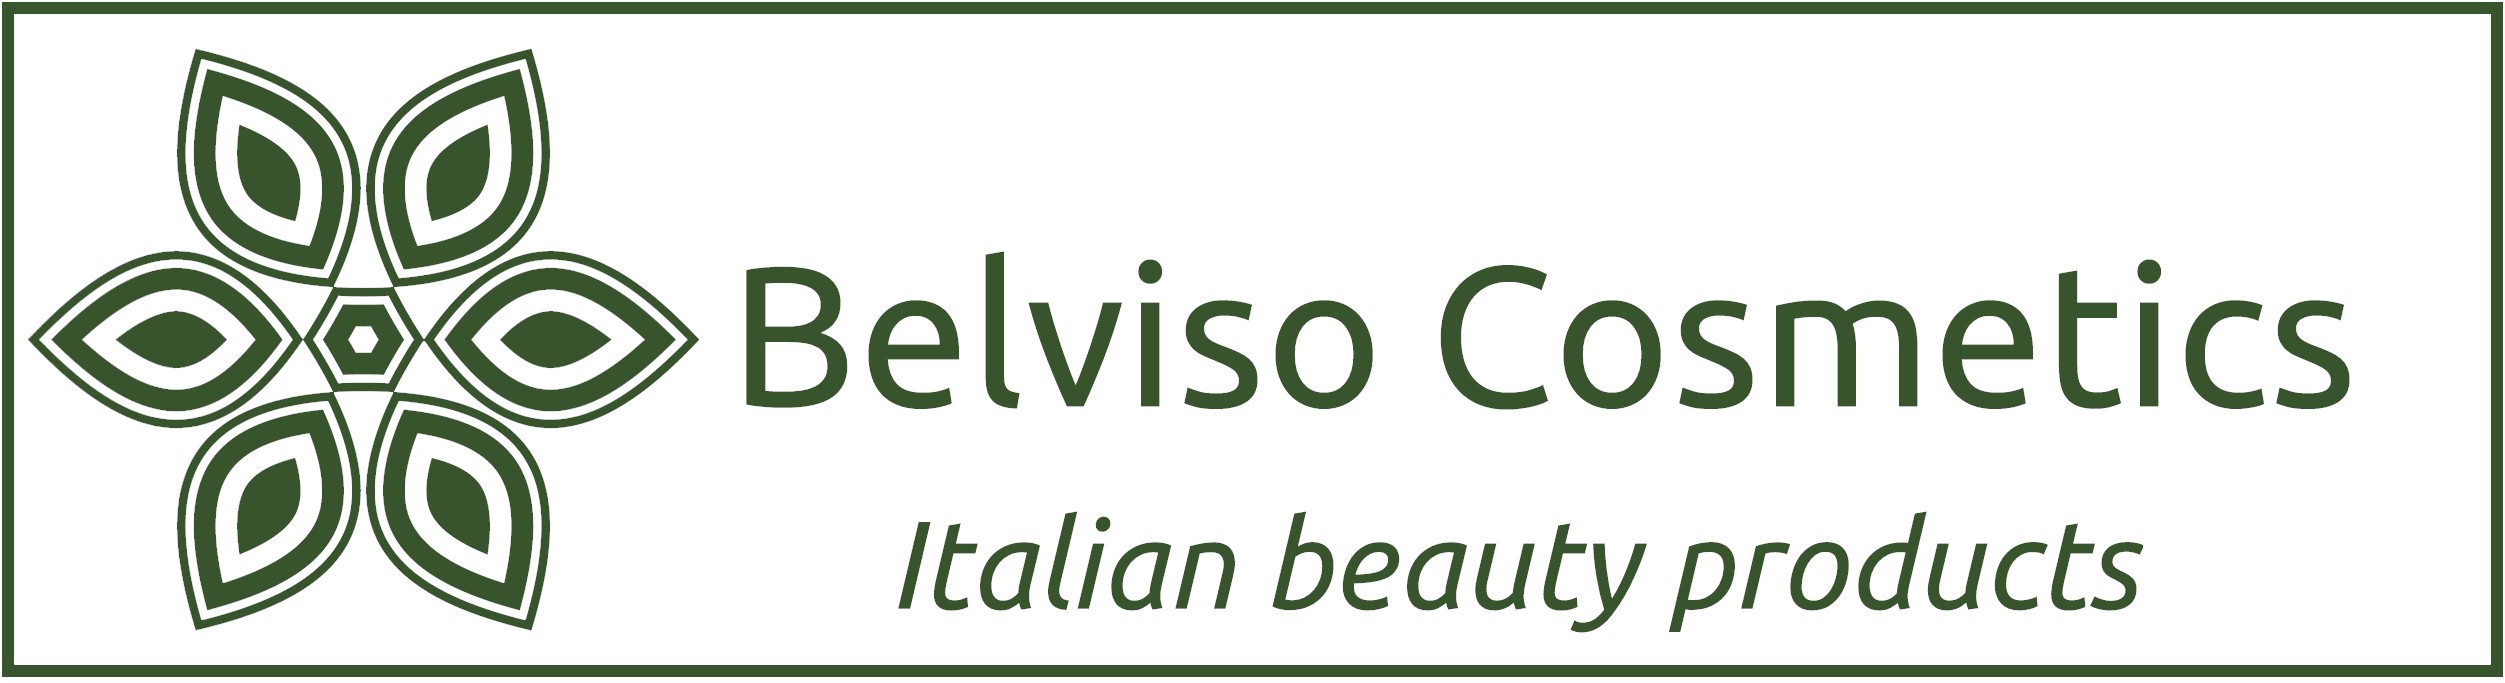 Belviso Cosmetics